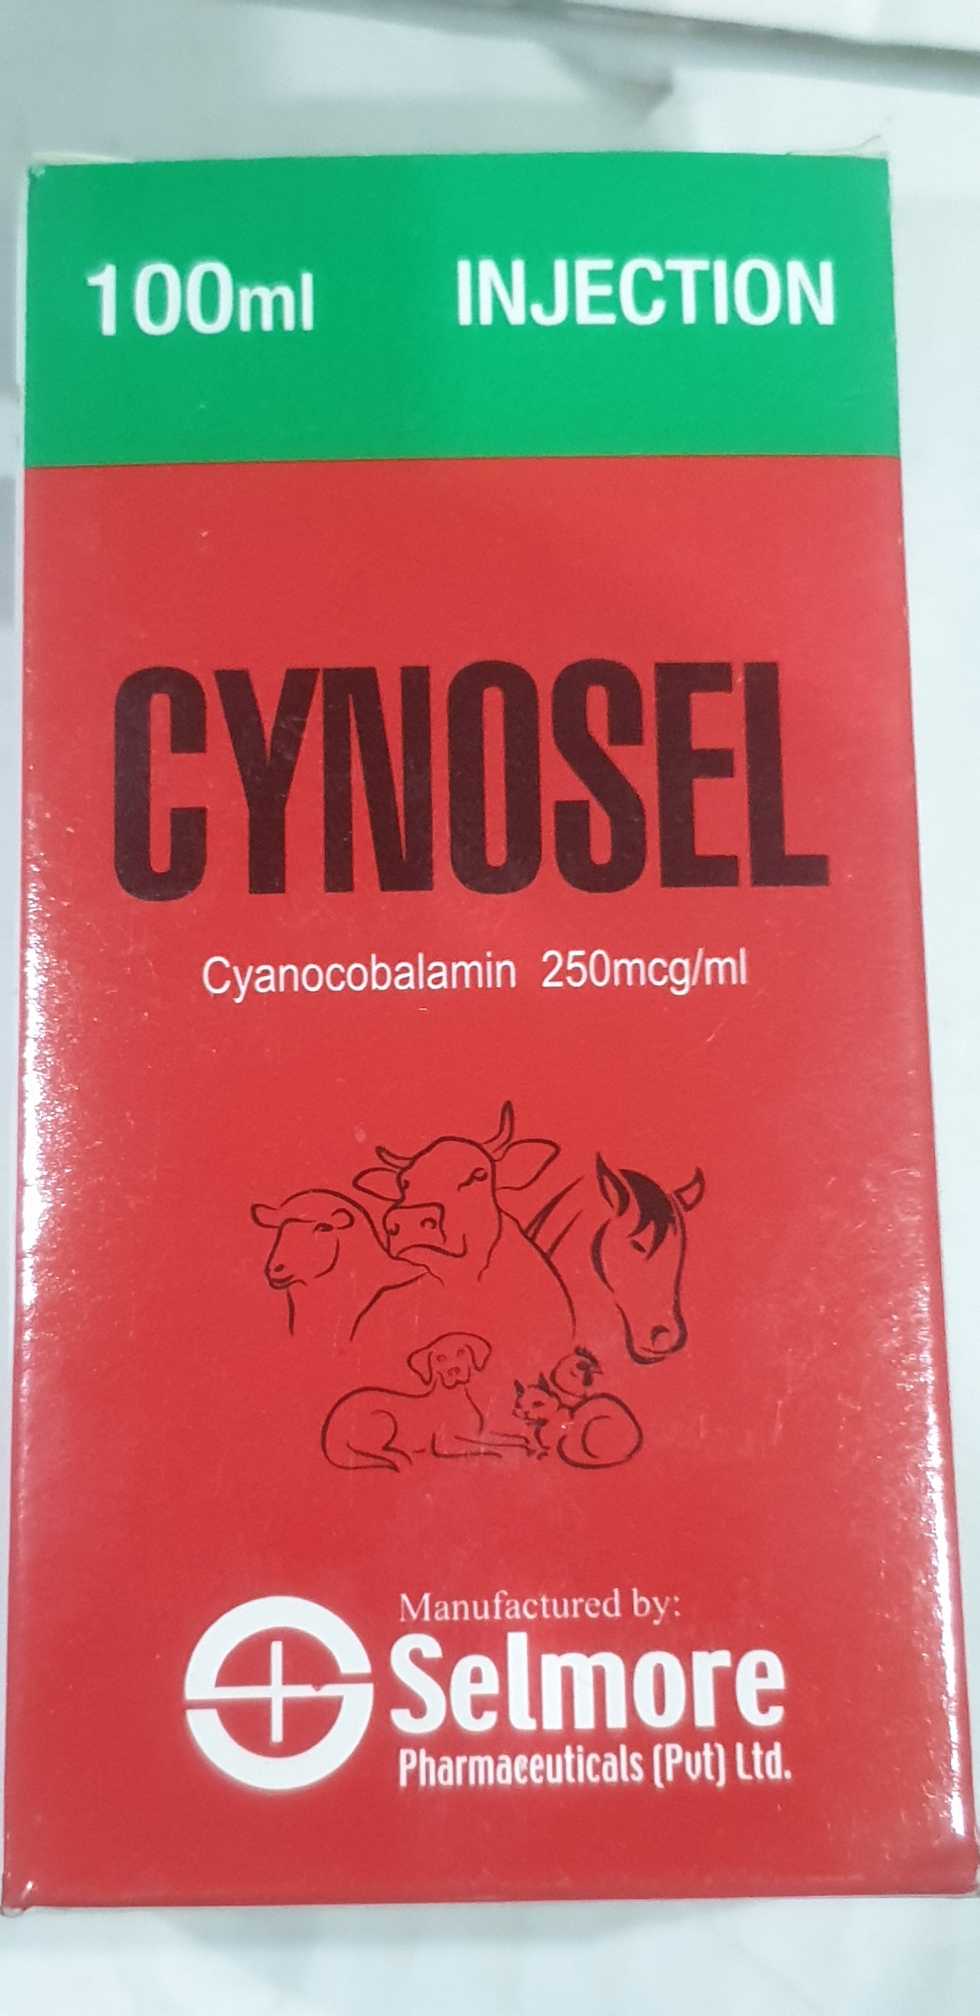 Cynosel!